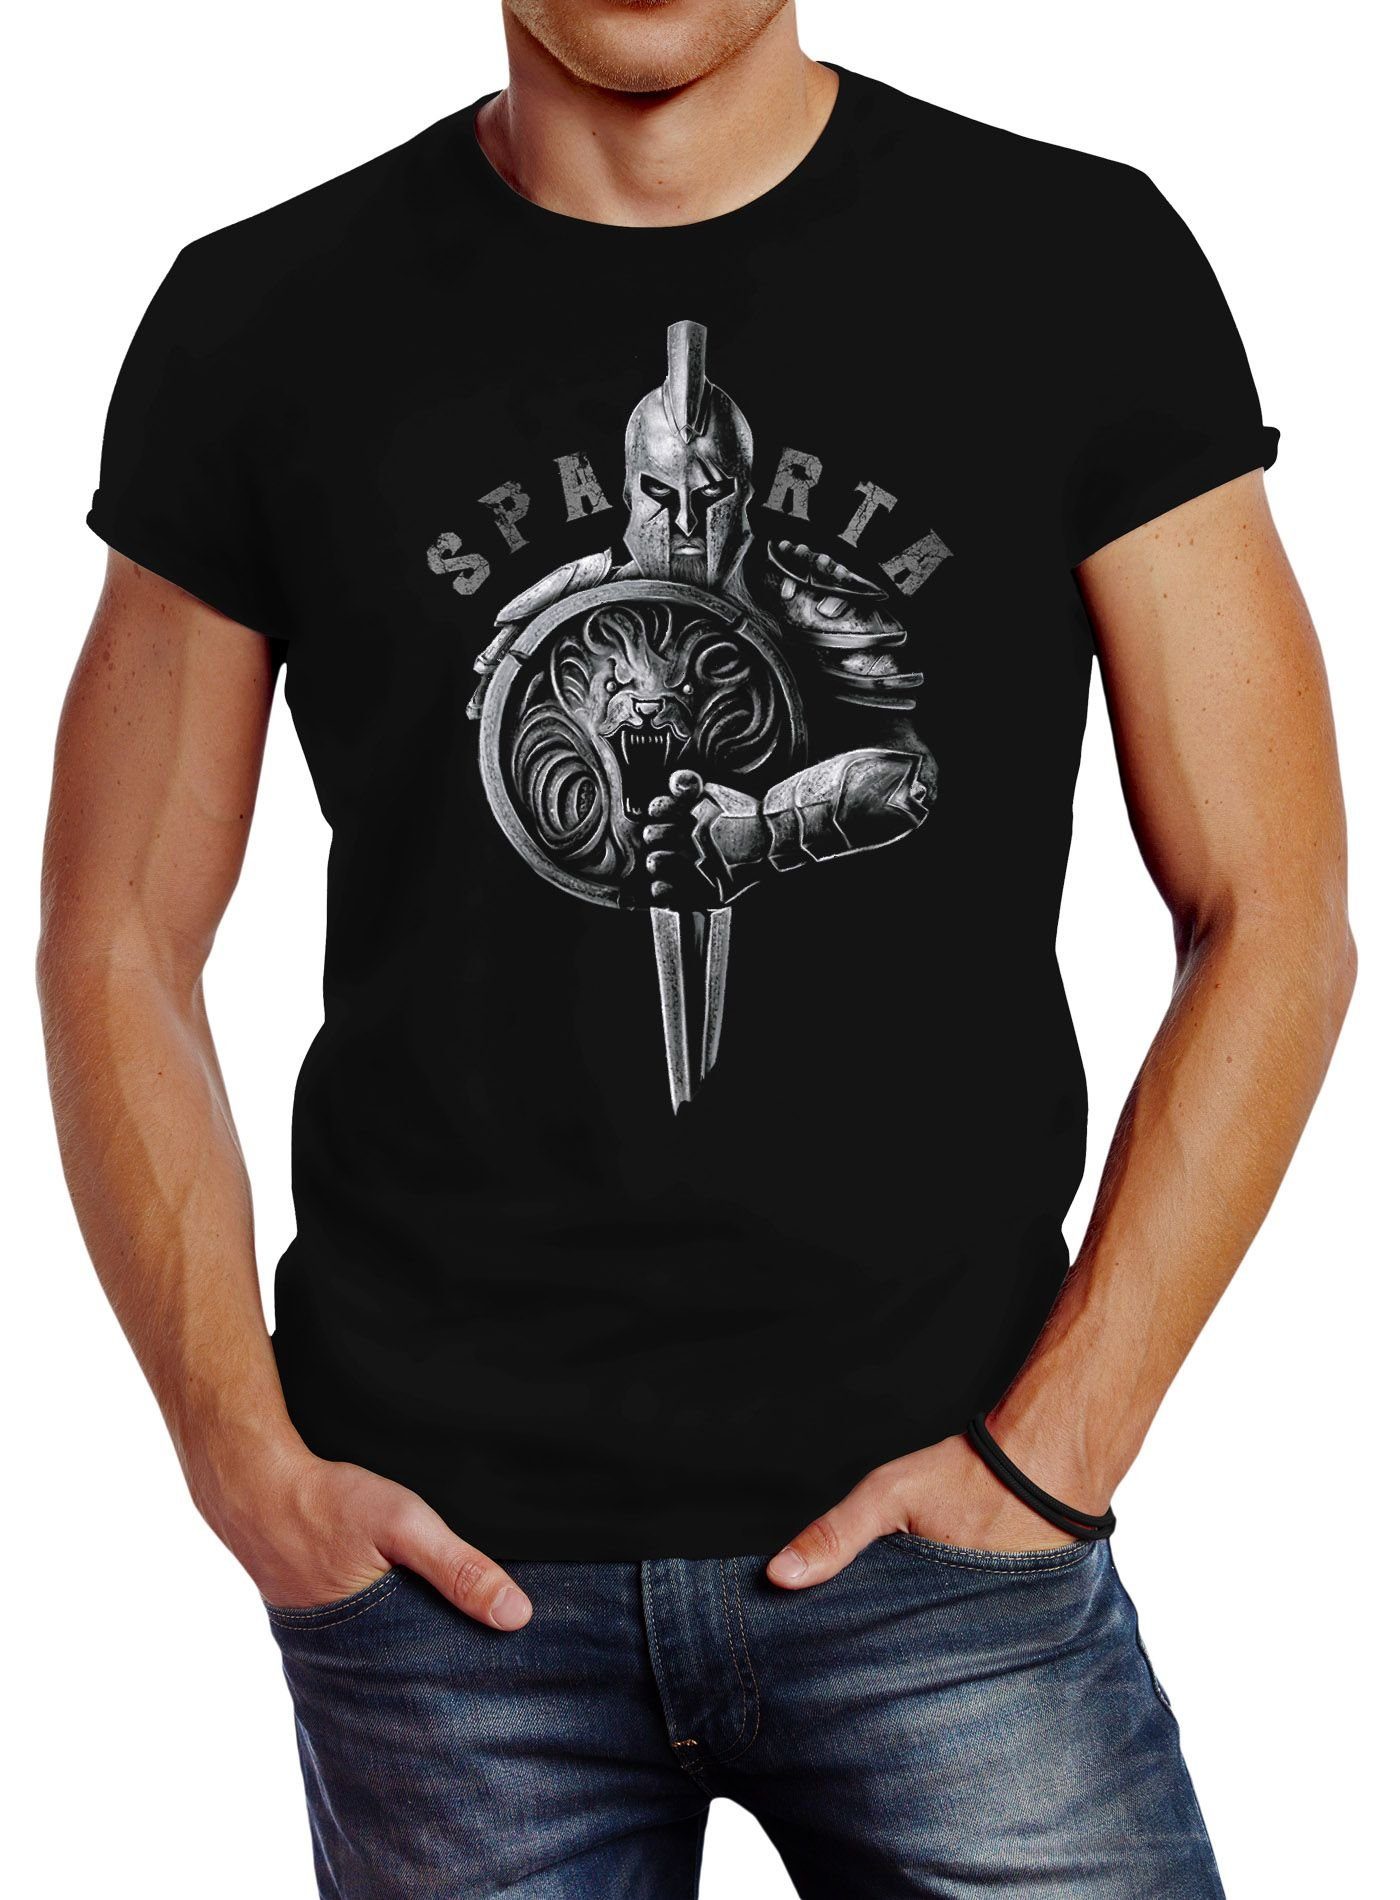 T-Shirt Sparta Warrior Aufdruck Neverless® Fashion Herren Neverless Schild Streetstyle mit Krieger Print Spartaner-helm Löwe Schwert Print-Shirt